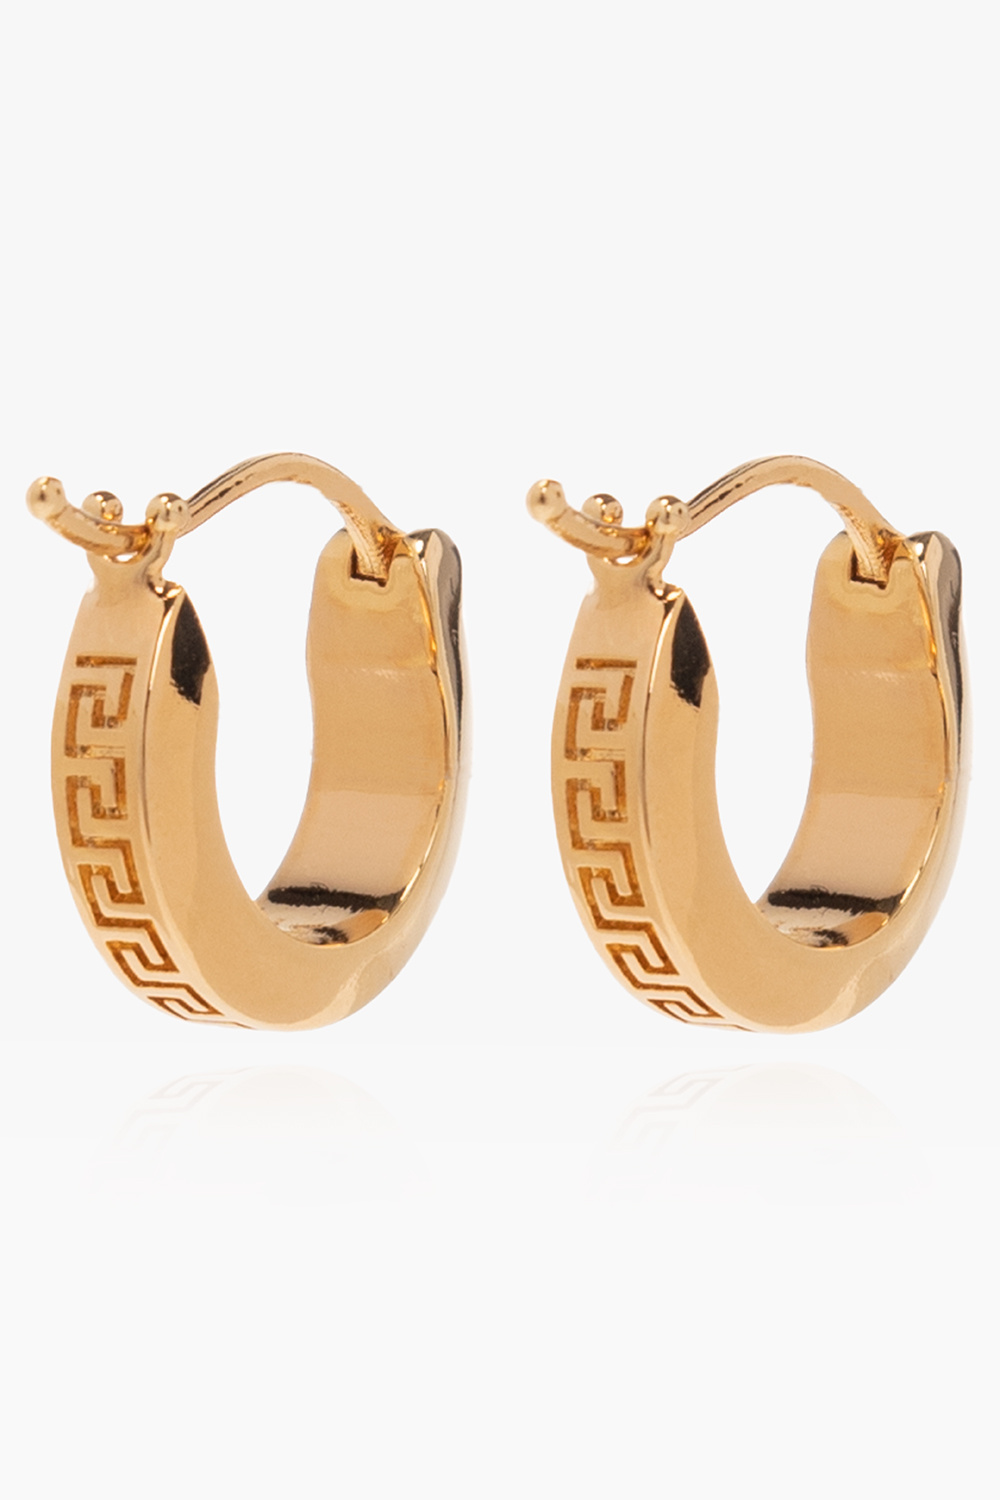 Versace Greca hoop earrings